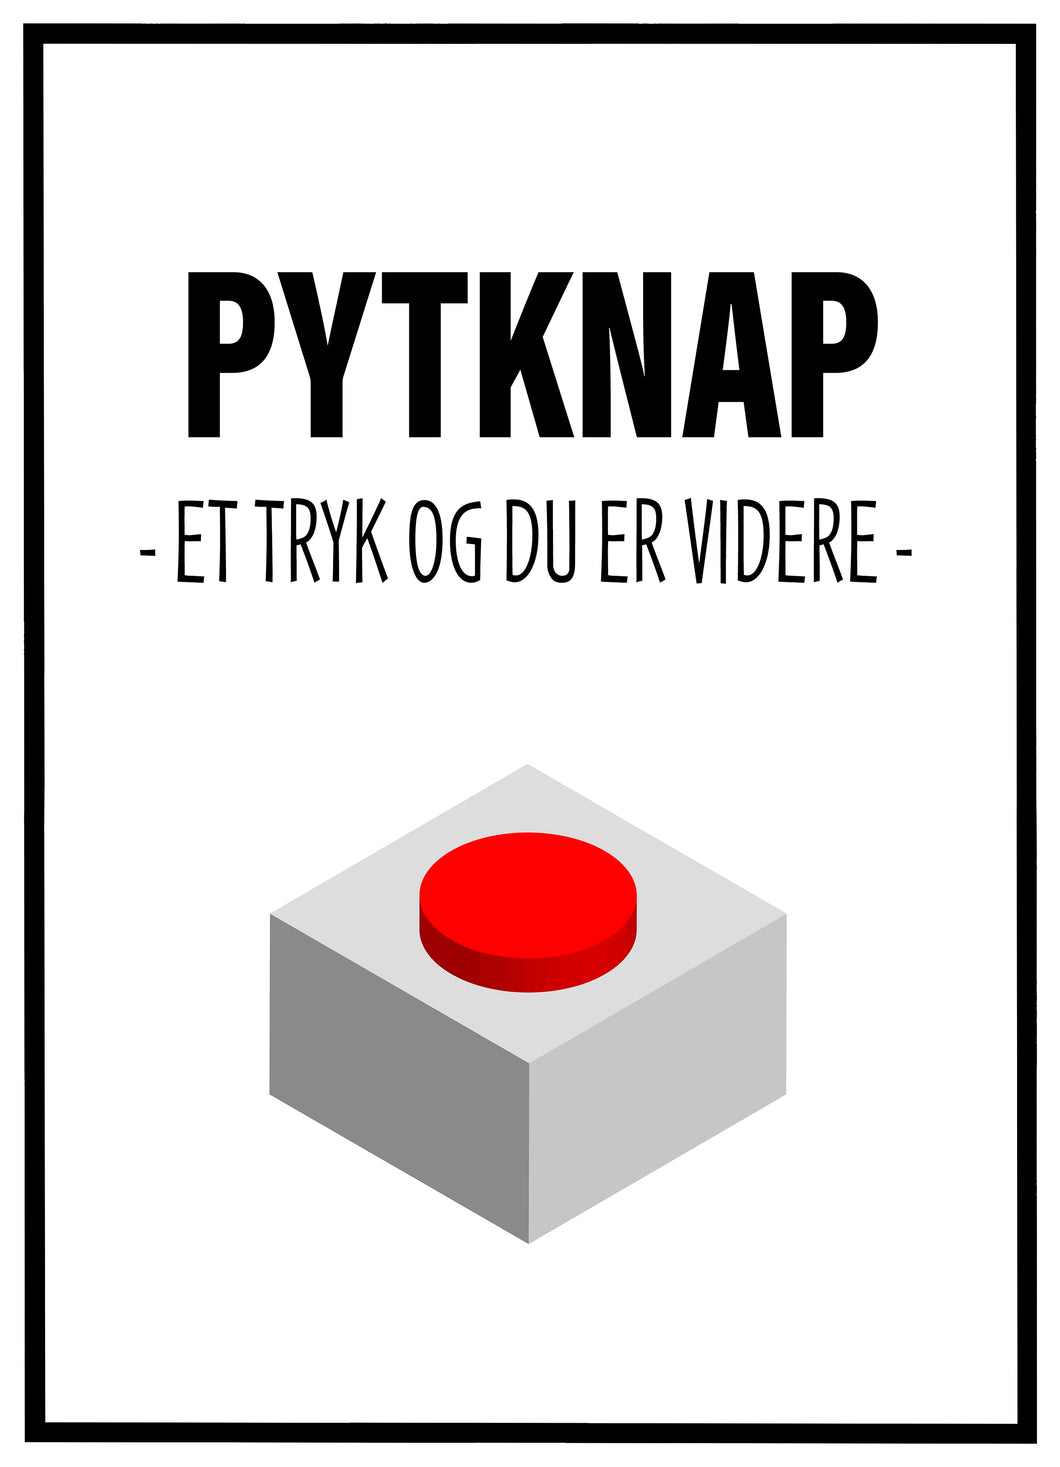 Pytknap - Plakat